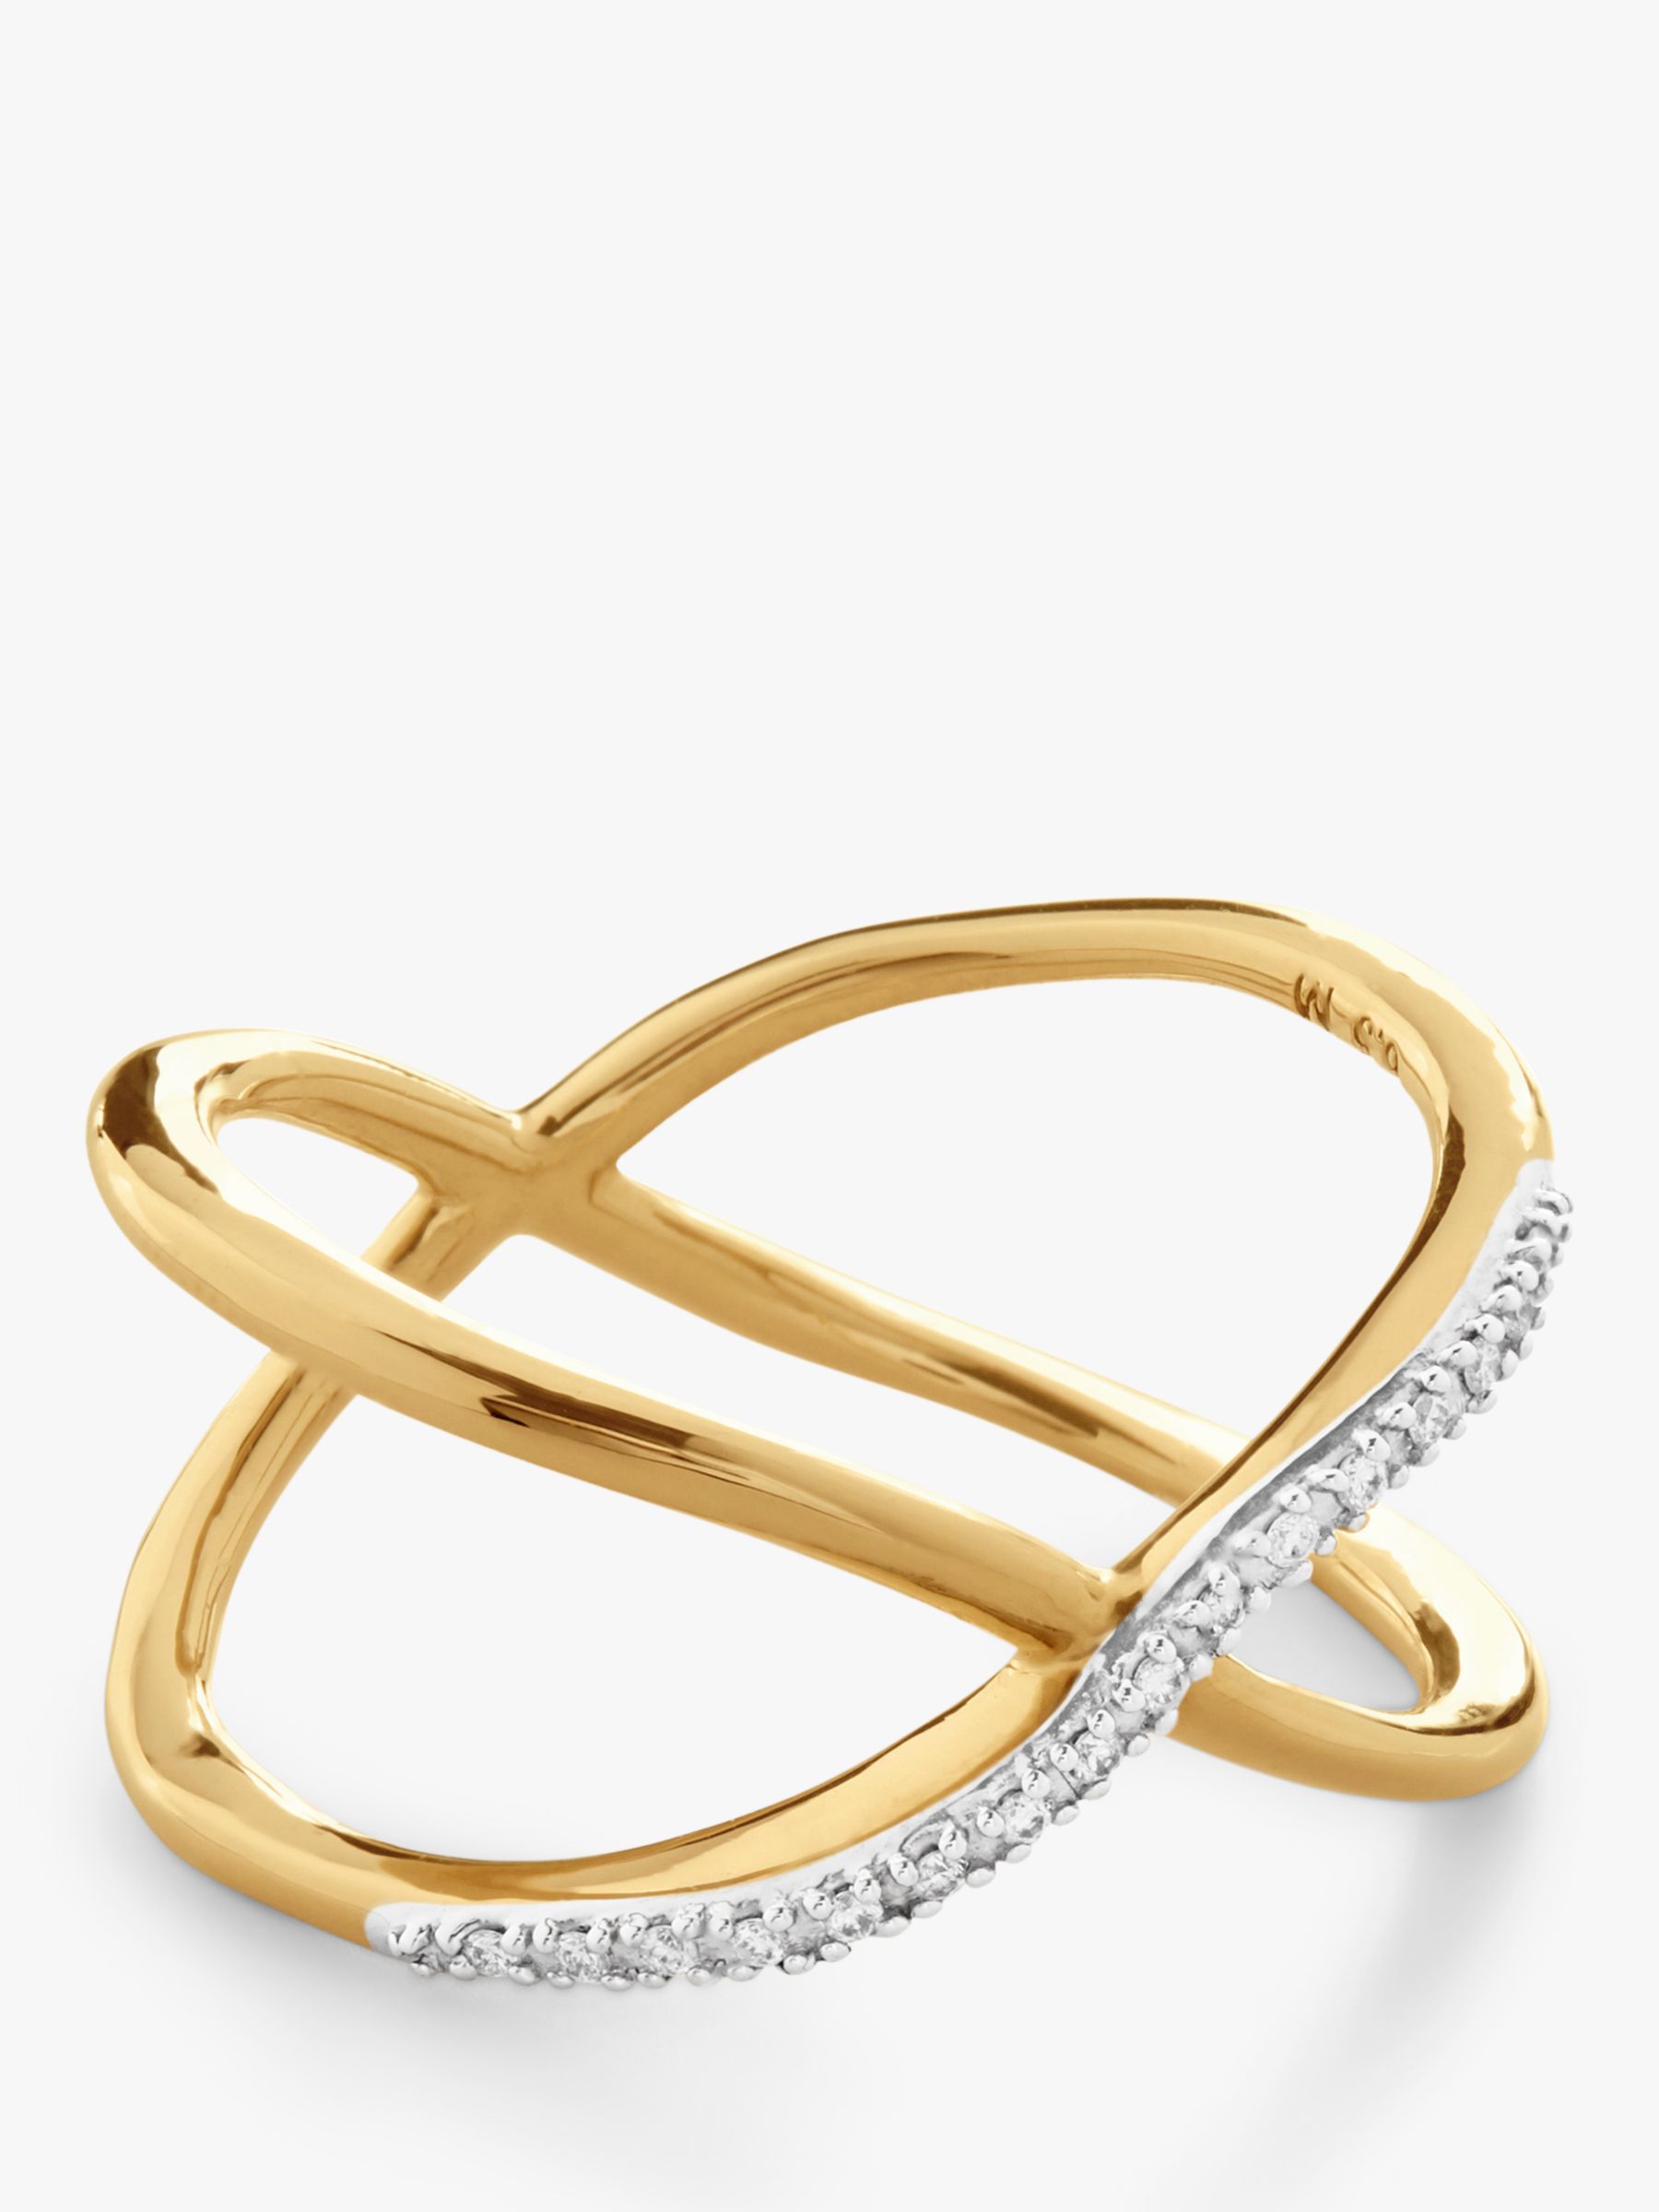 Monica Vinader Kiss Diamond Cross Over Ring, Gold, N